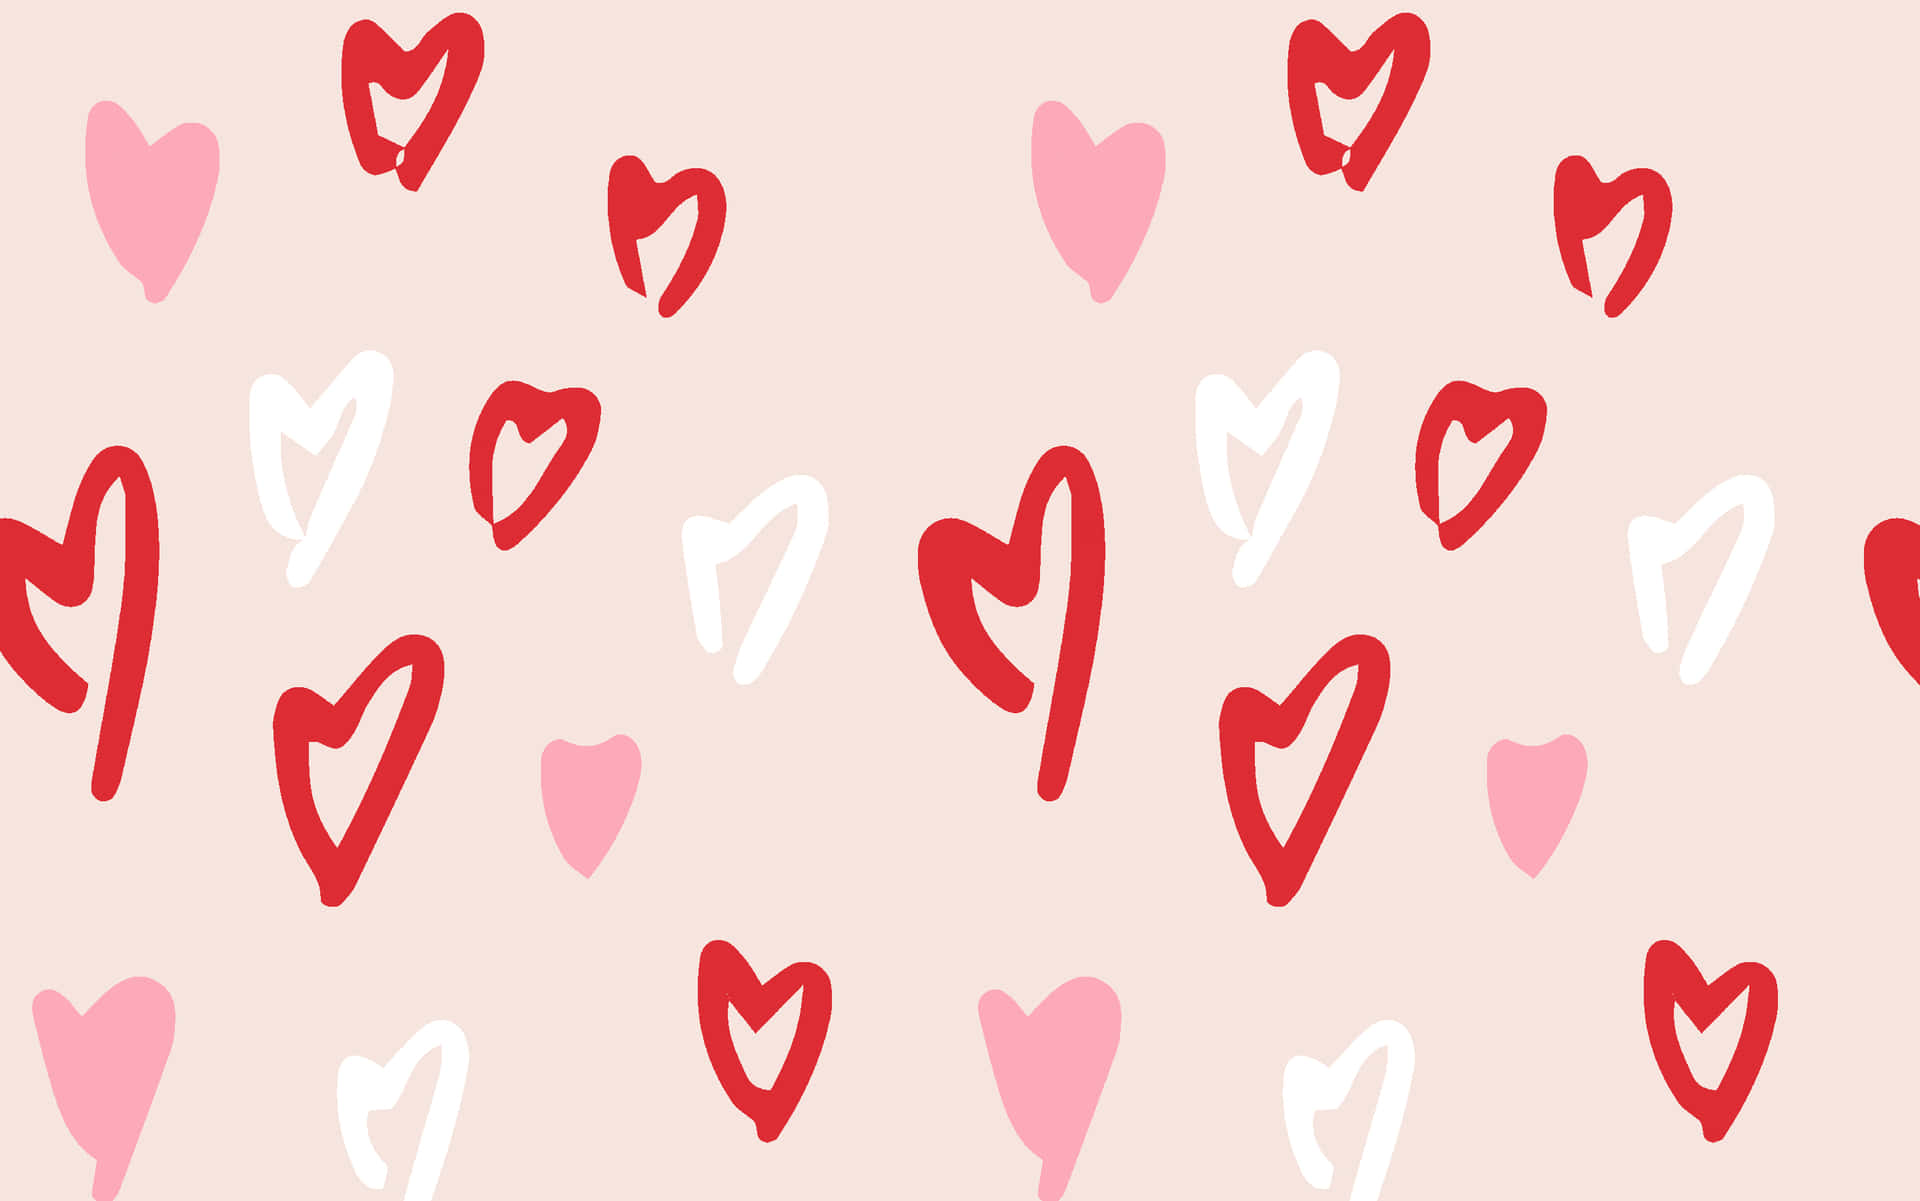 Aesthetic Valentine's Day Lovely Heart Symbol Digital Art Wallpaper